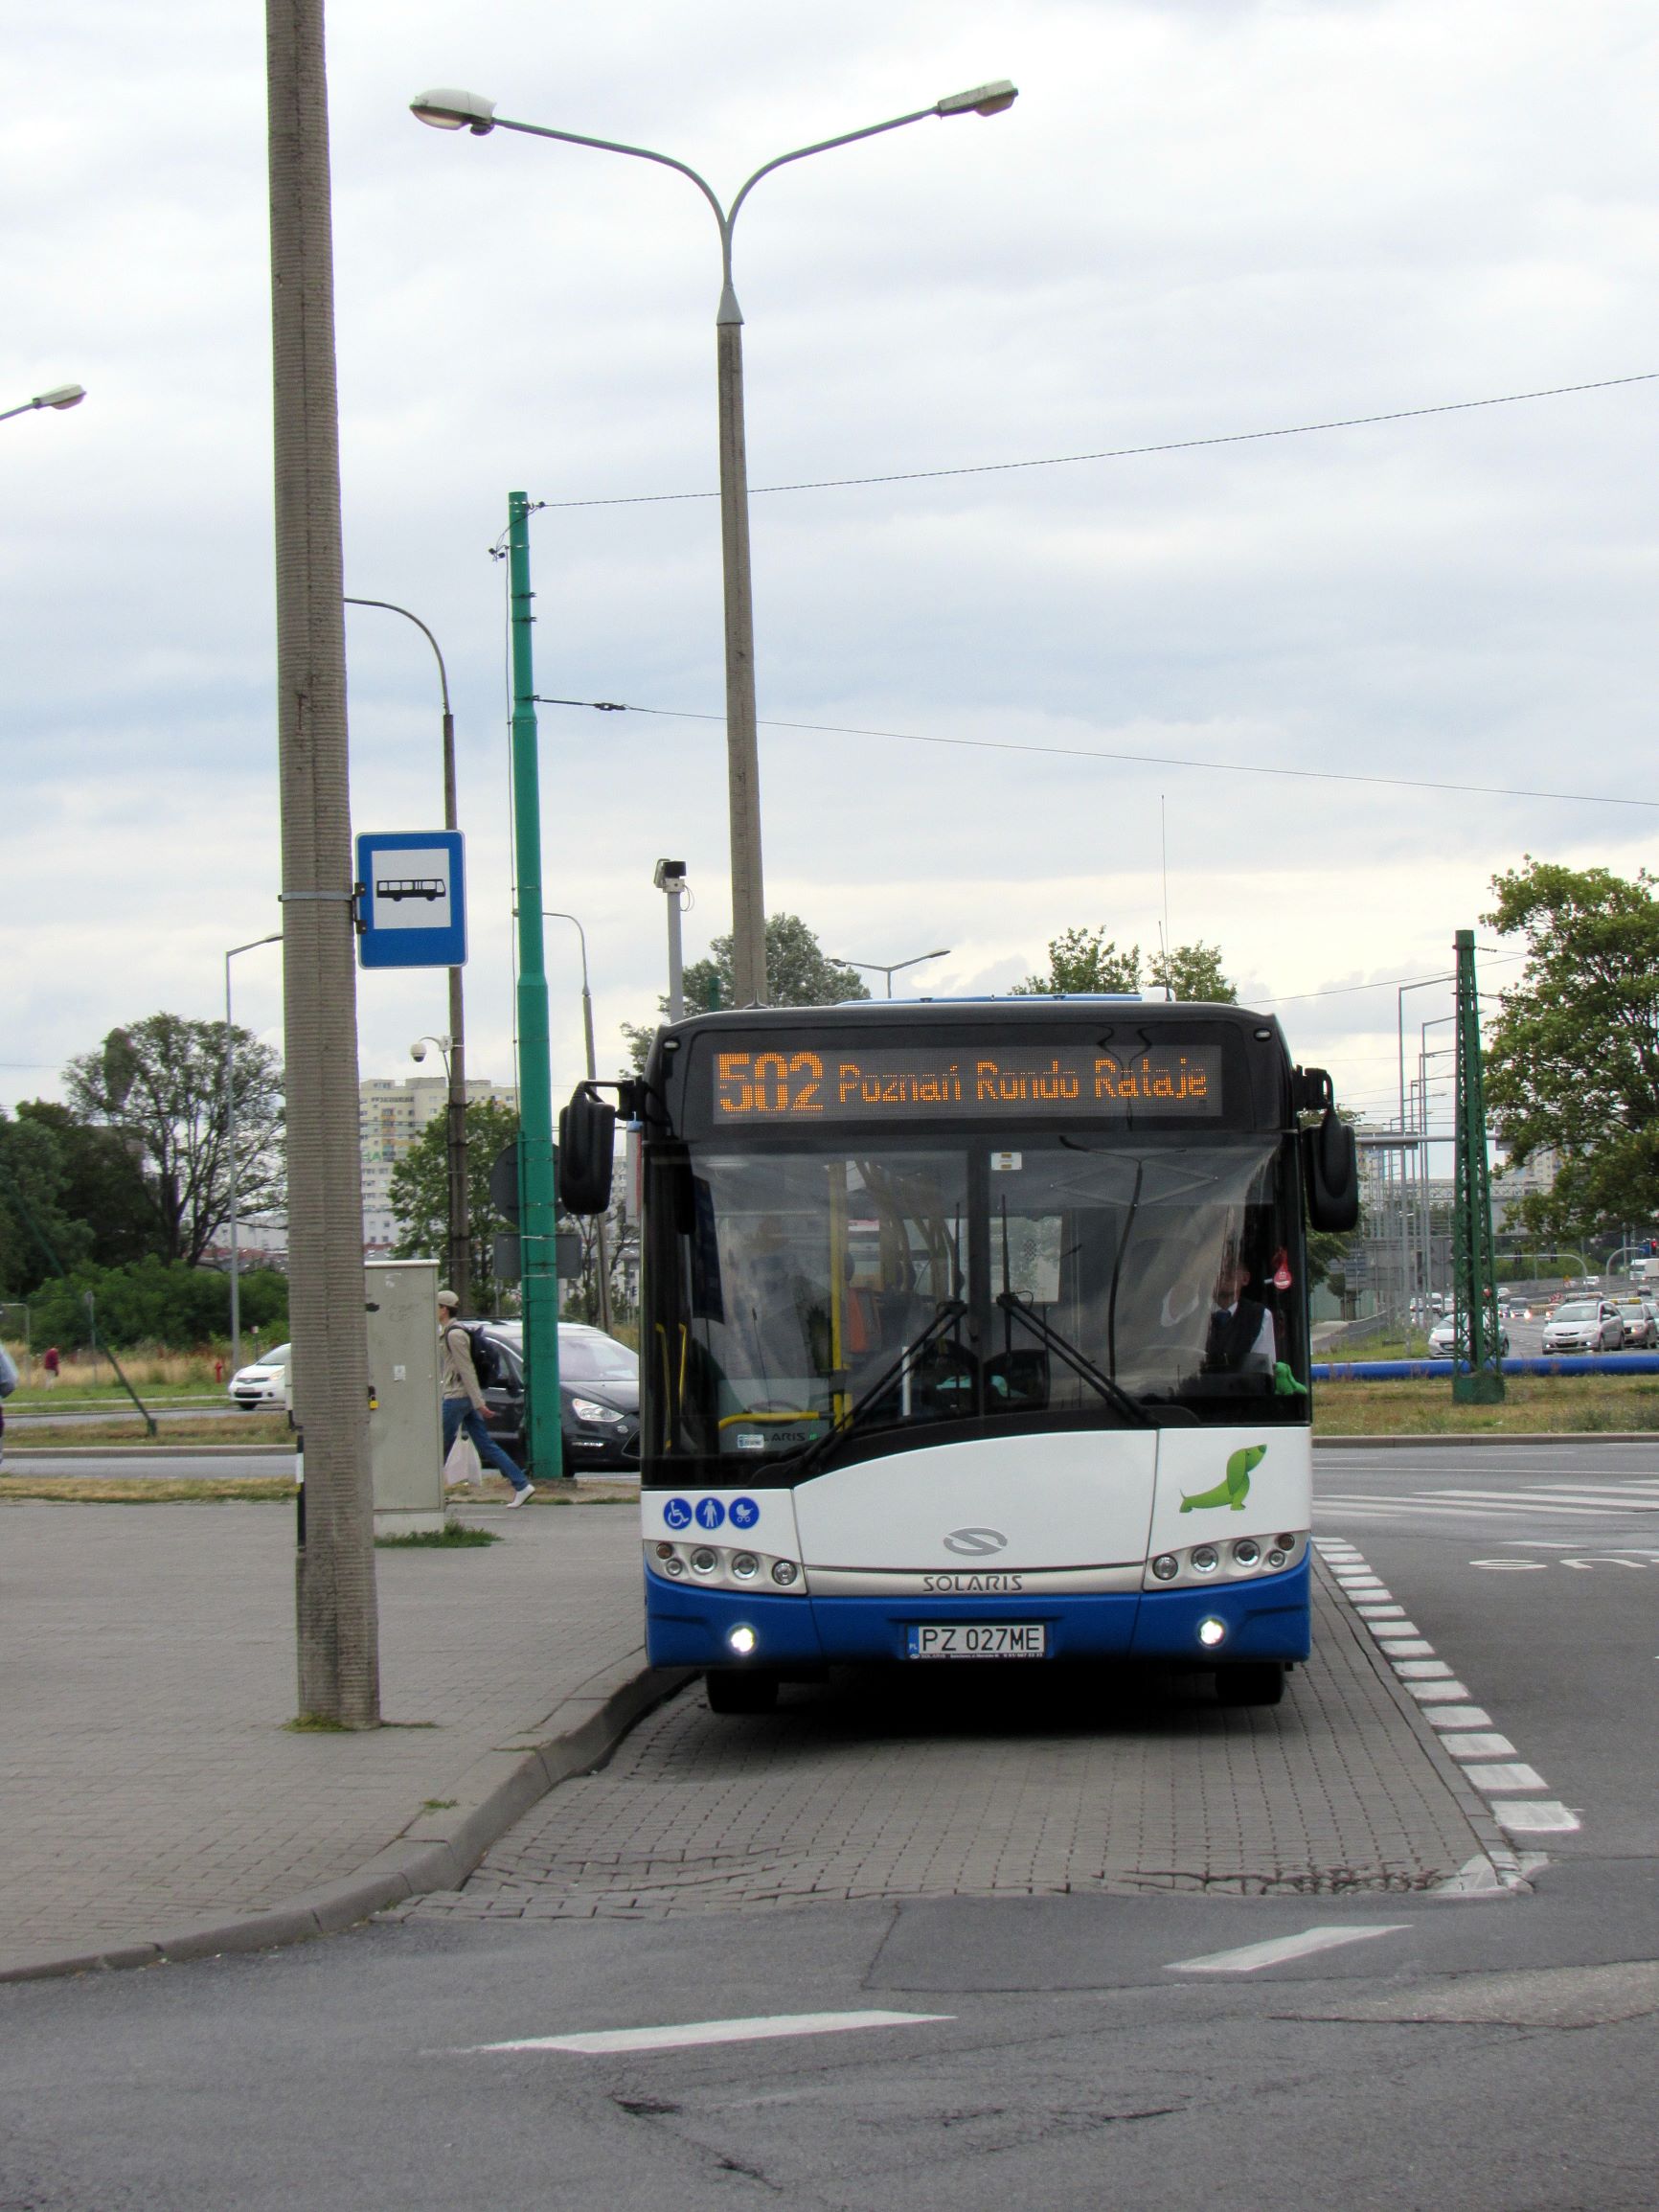 Linia nr 502 – od wtorku 20 października zmiana lokalizacji przystanków Dachowa/Kręta